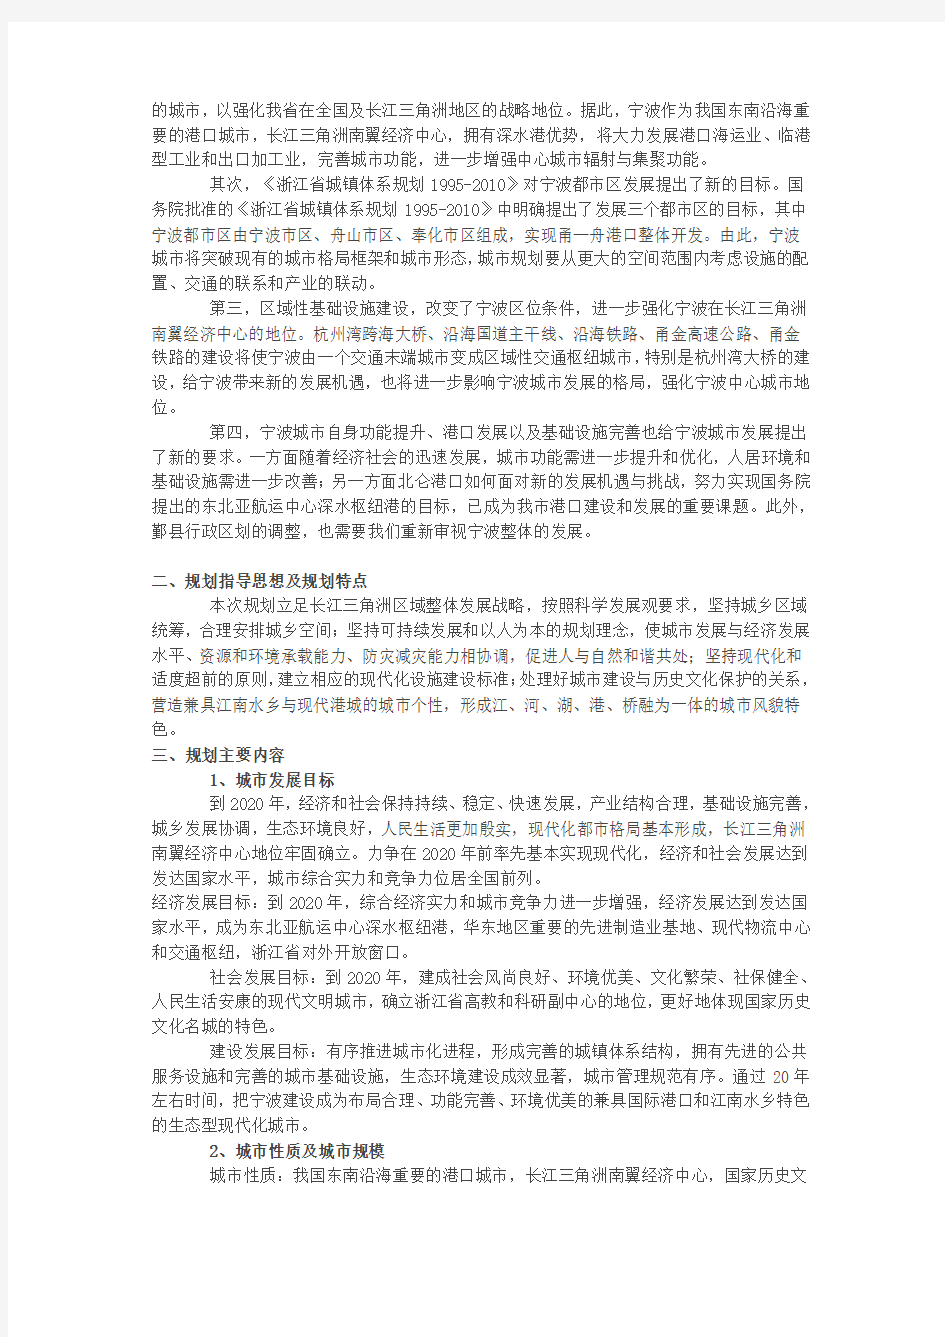 宁波市城市总体规划概要(-2020)教学文案